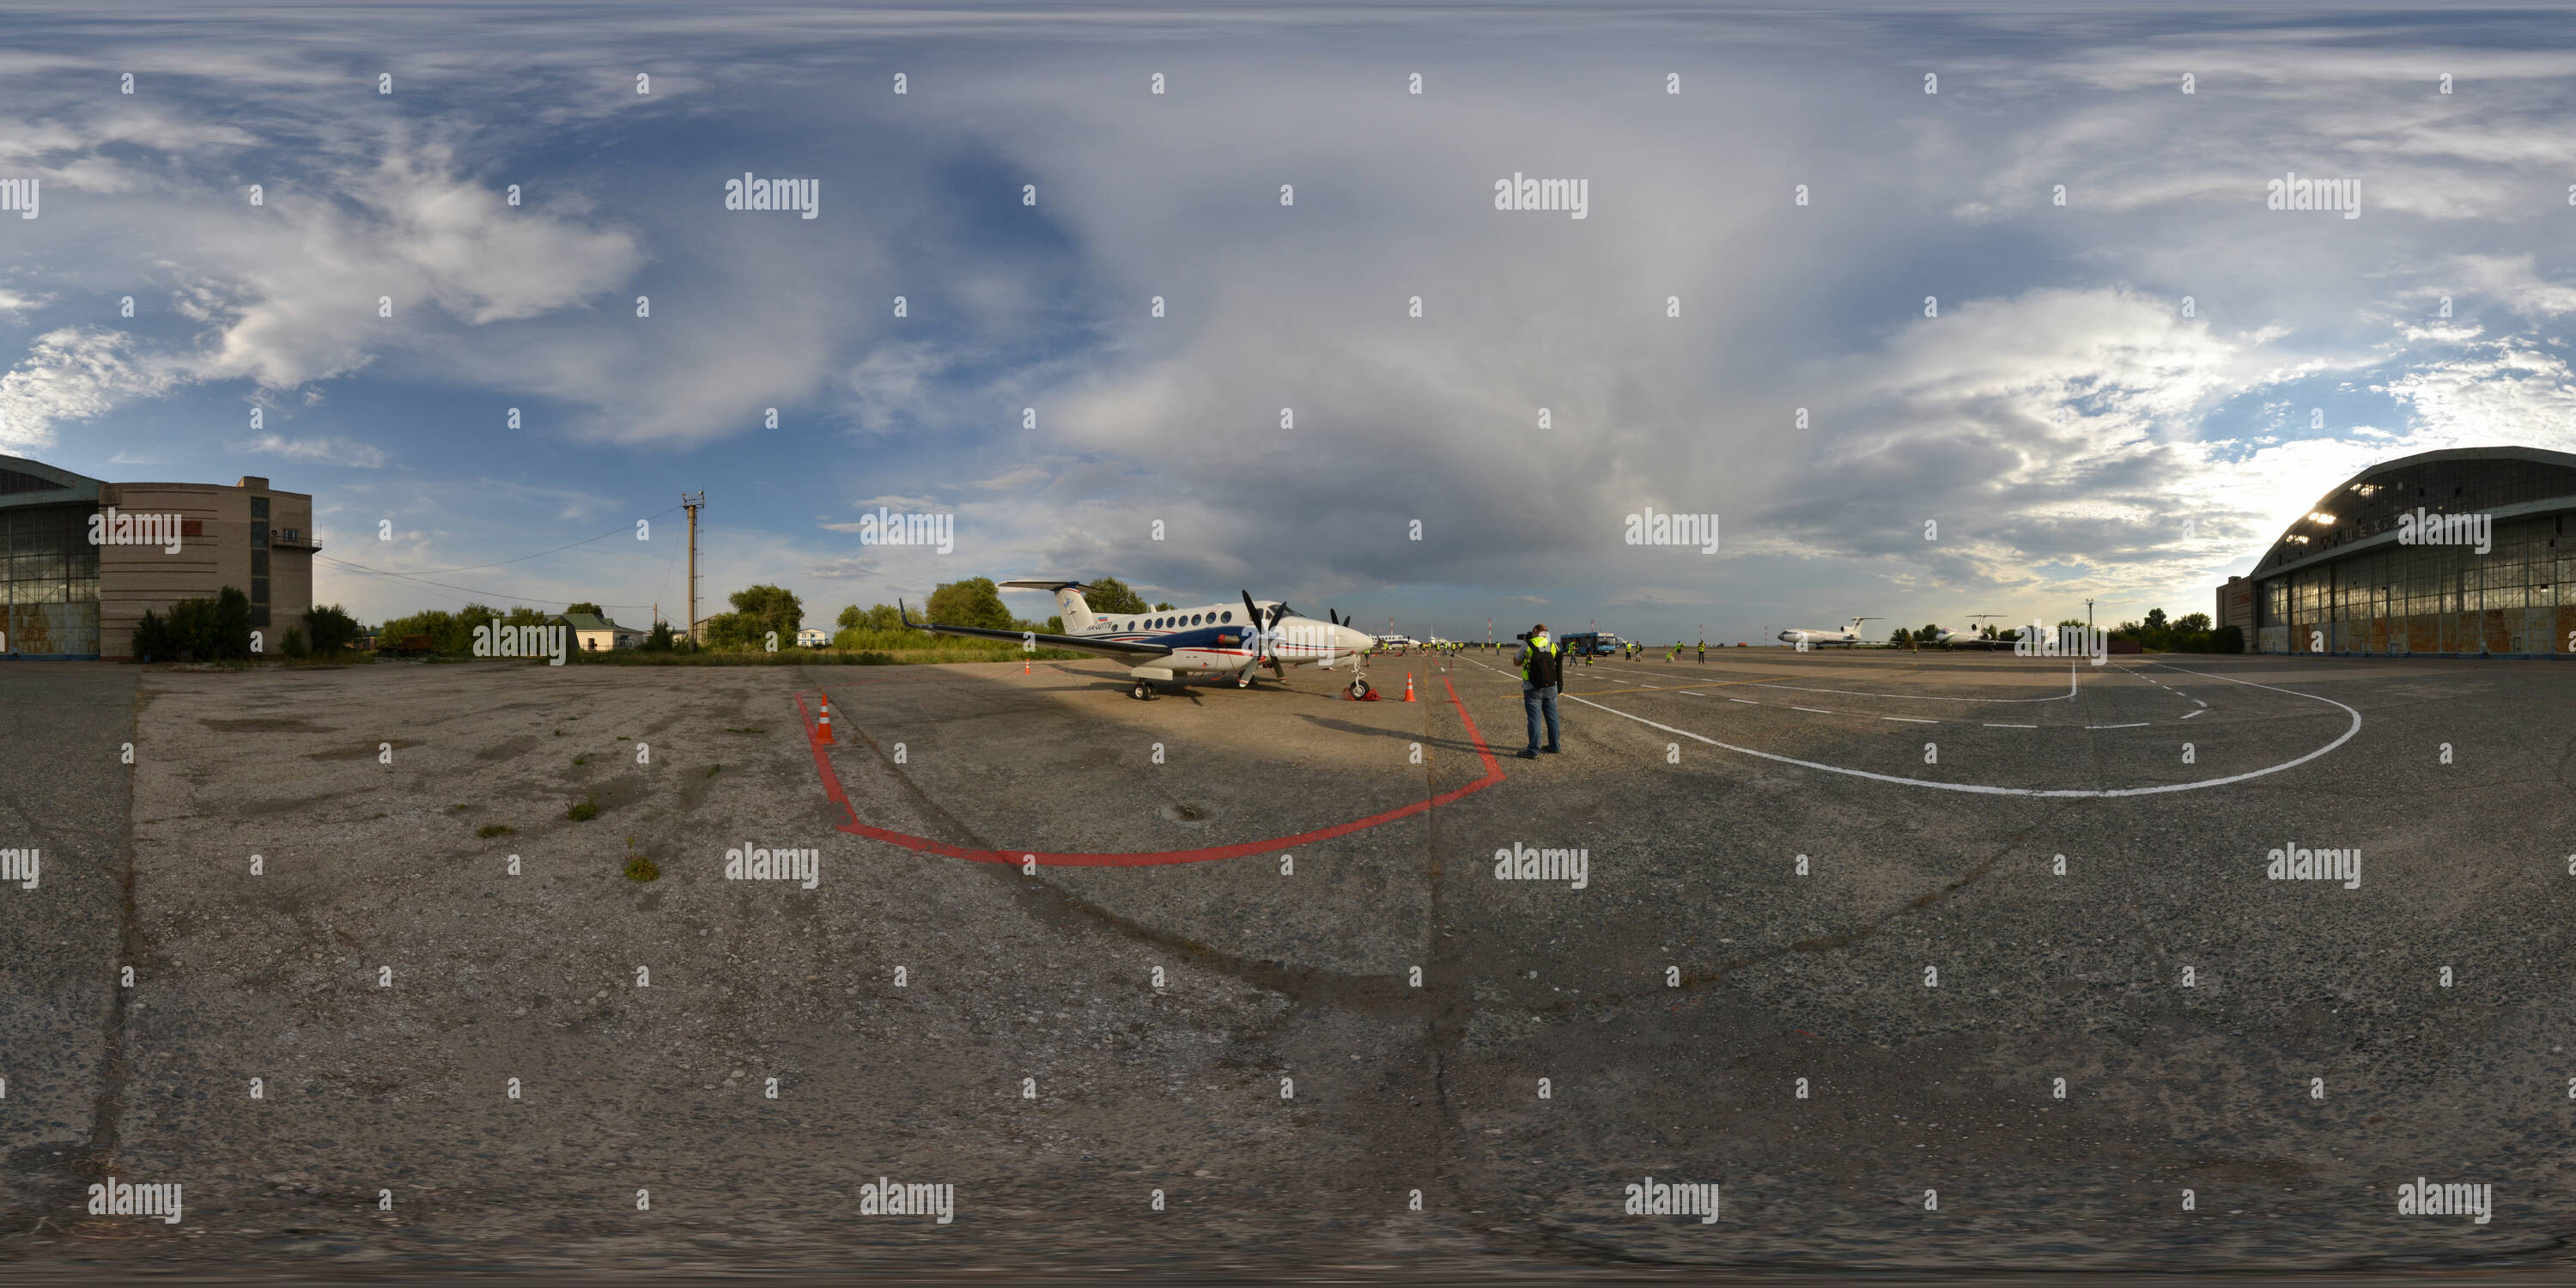 360 degree panoramic view of Samara Kurumoch International Airport production workshop